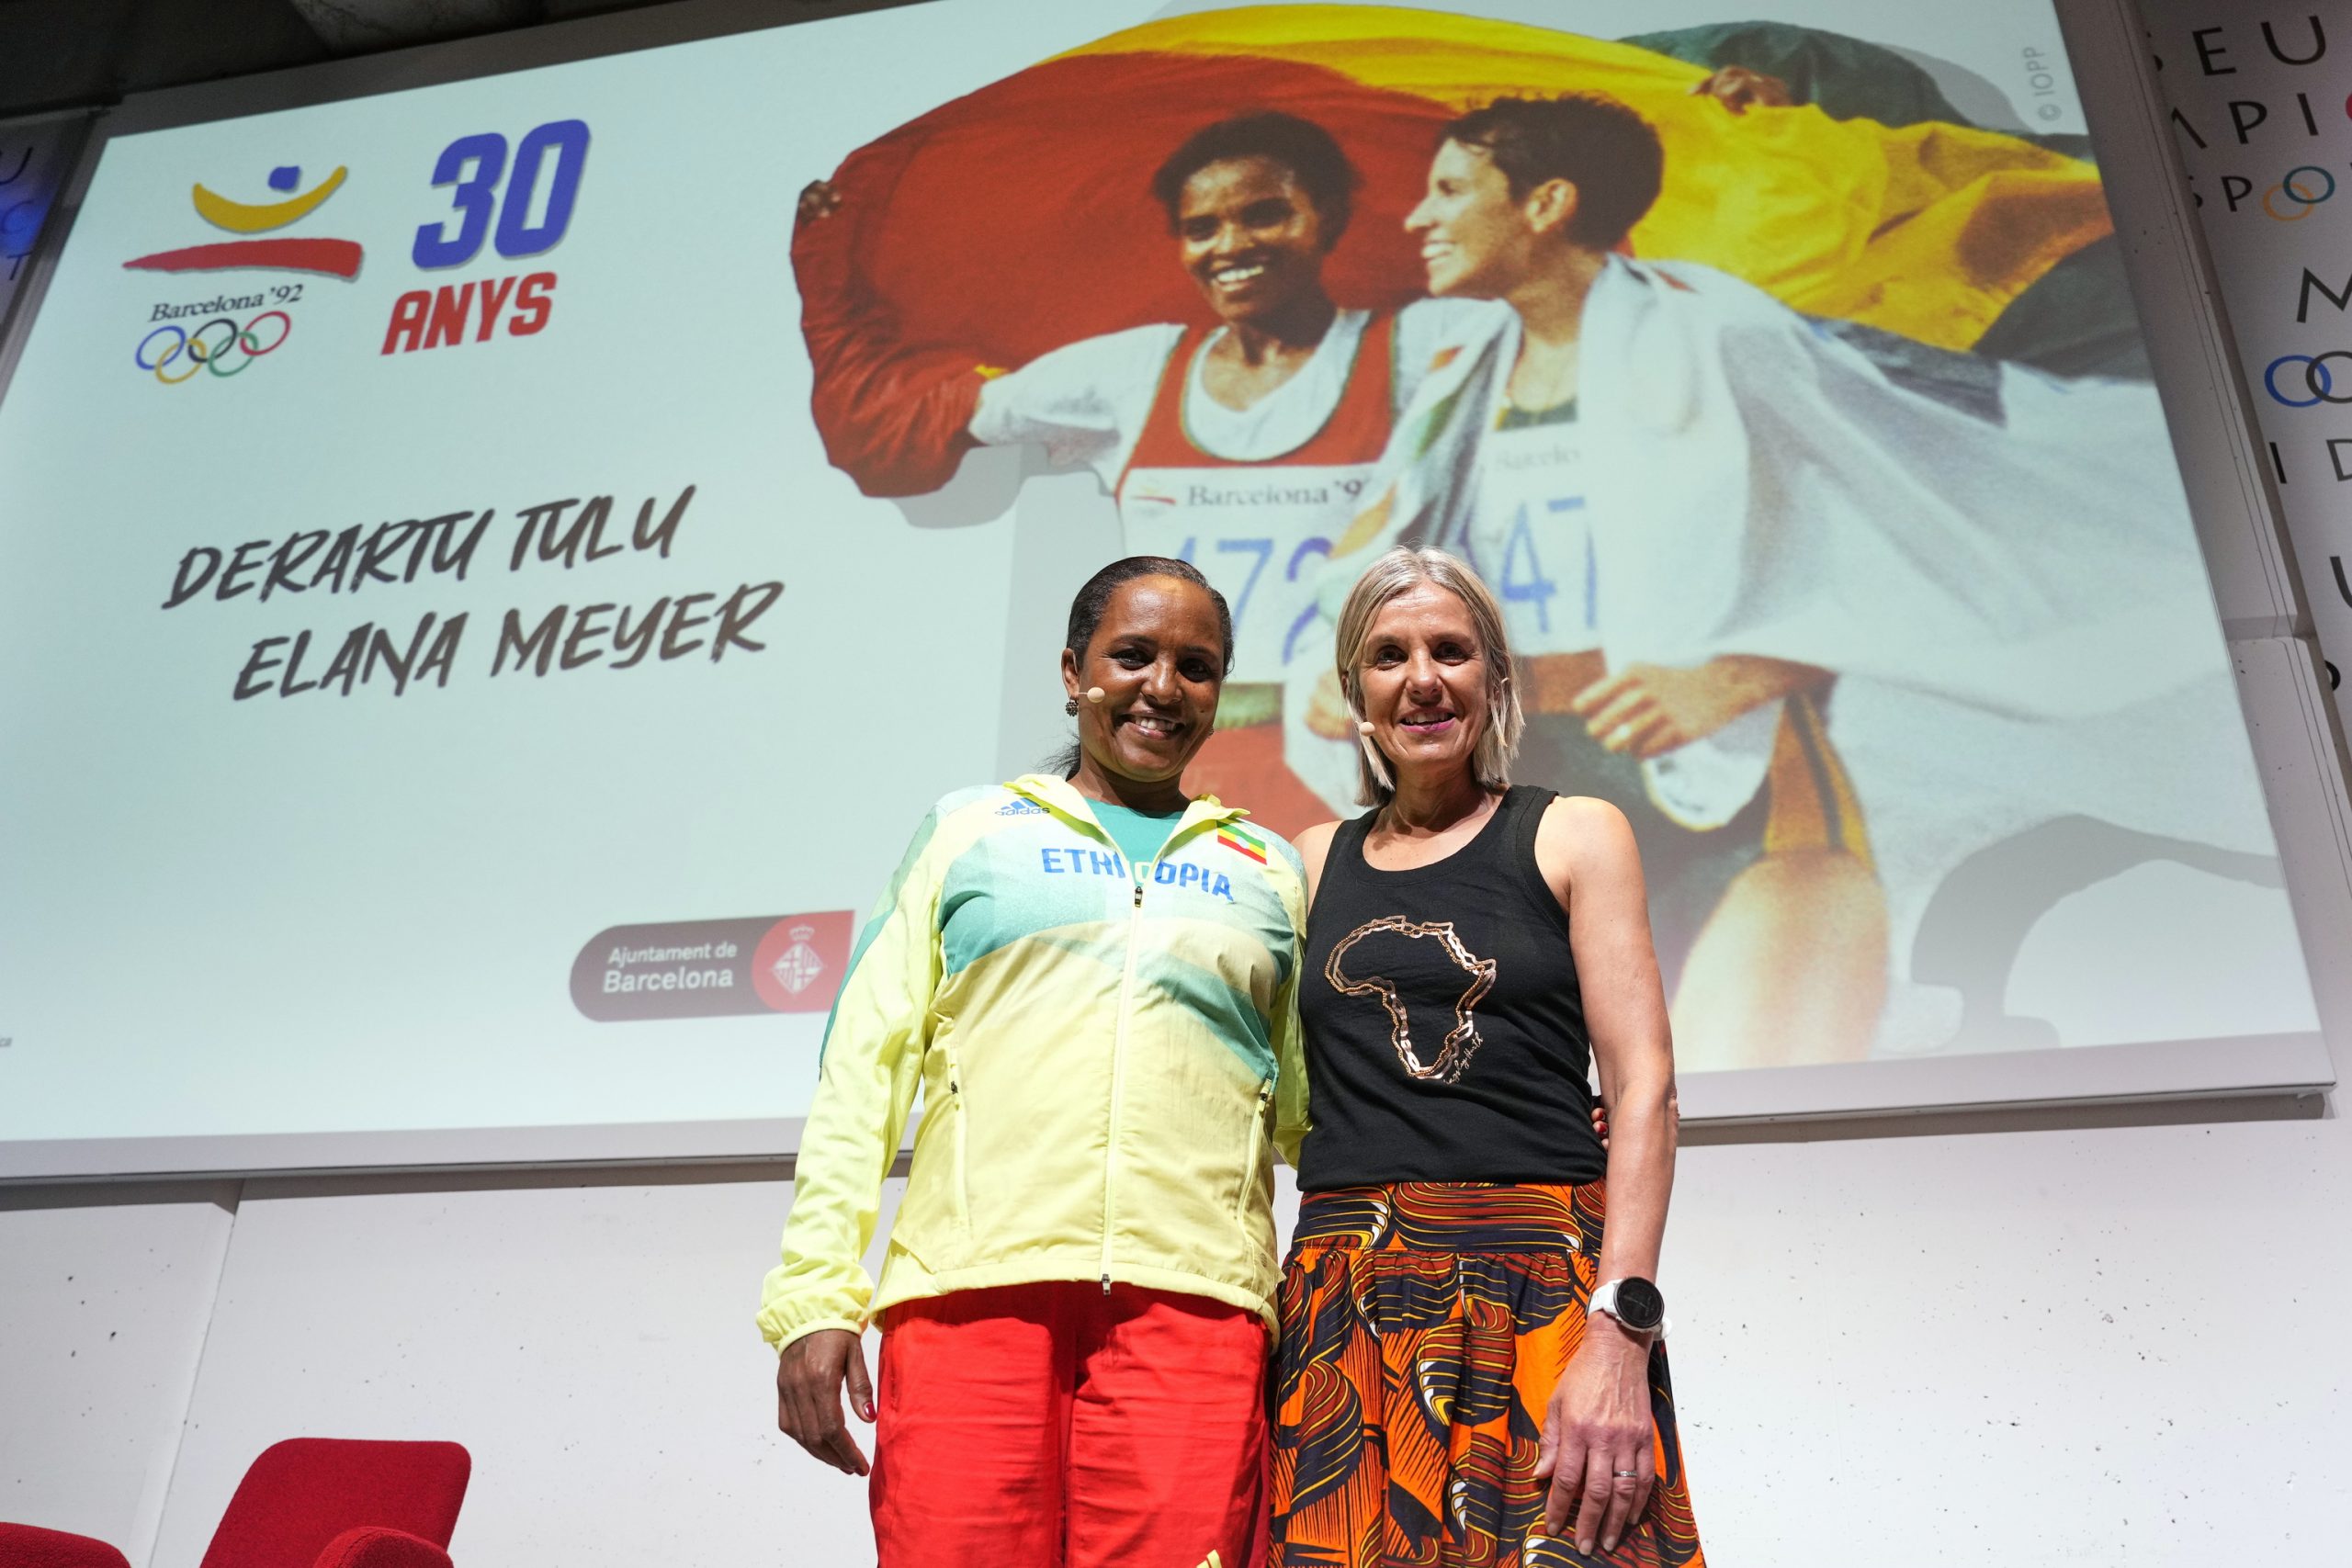 Tulu y Meyer, 30 años de un abrazo histórico: "Fue una victoria de toda África"